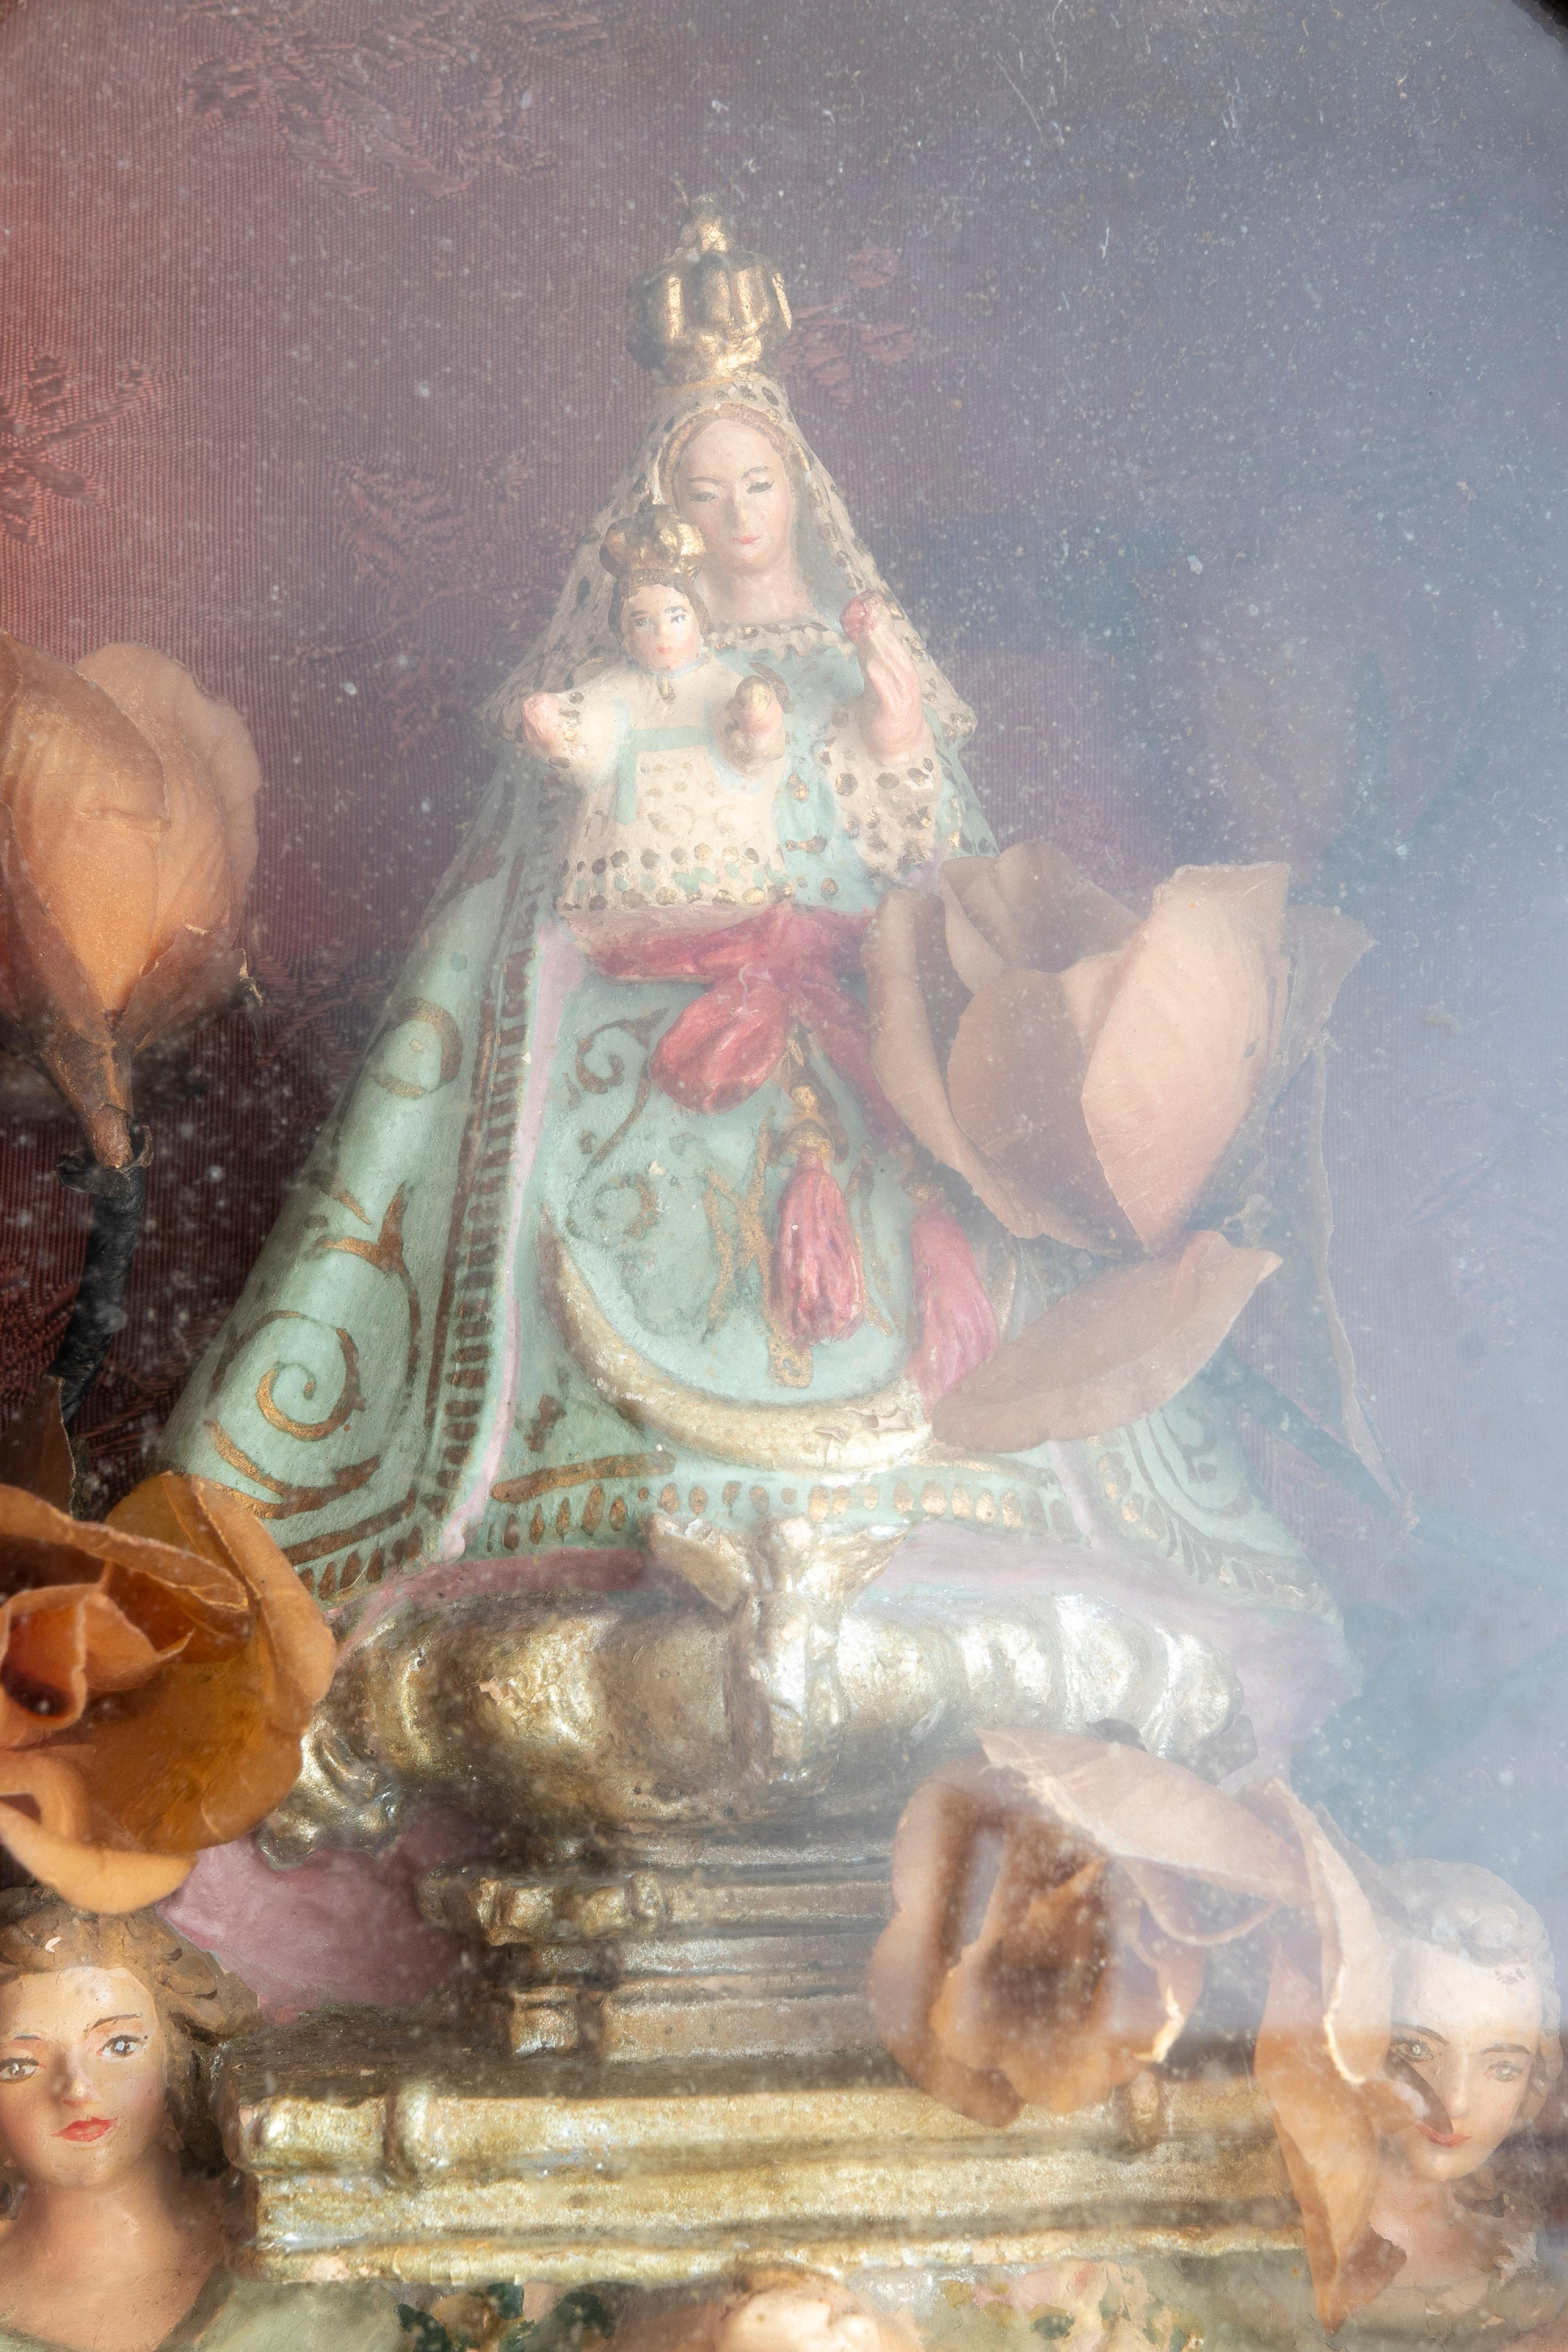  Vierge Fuencisla en terre cuite espagnole de la fin du XIXe siècle dans sa boîte en bois 9